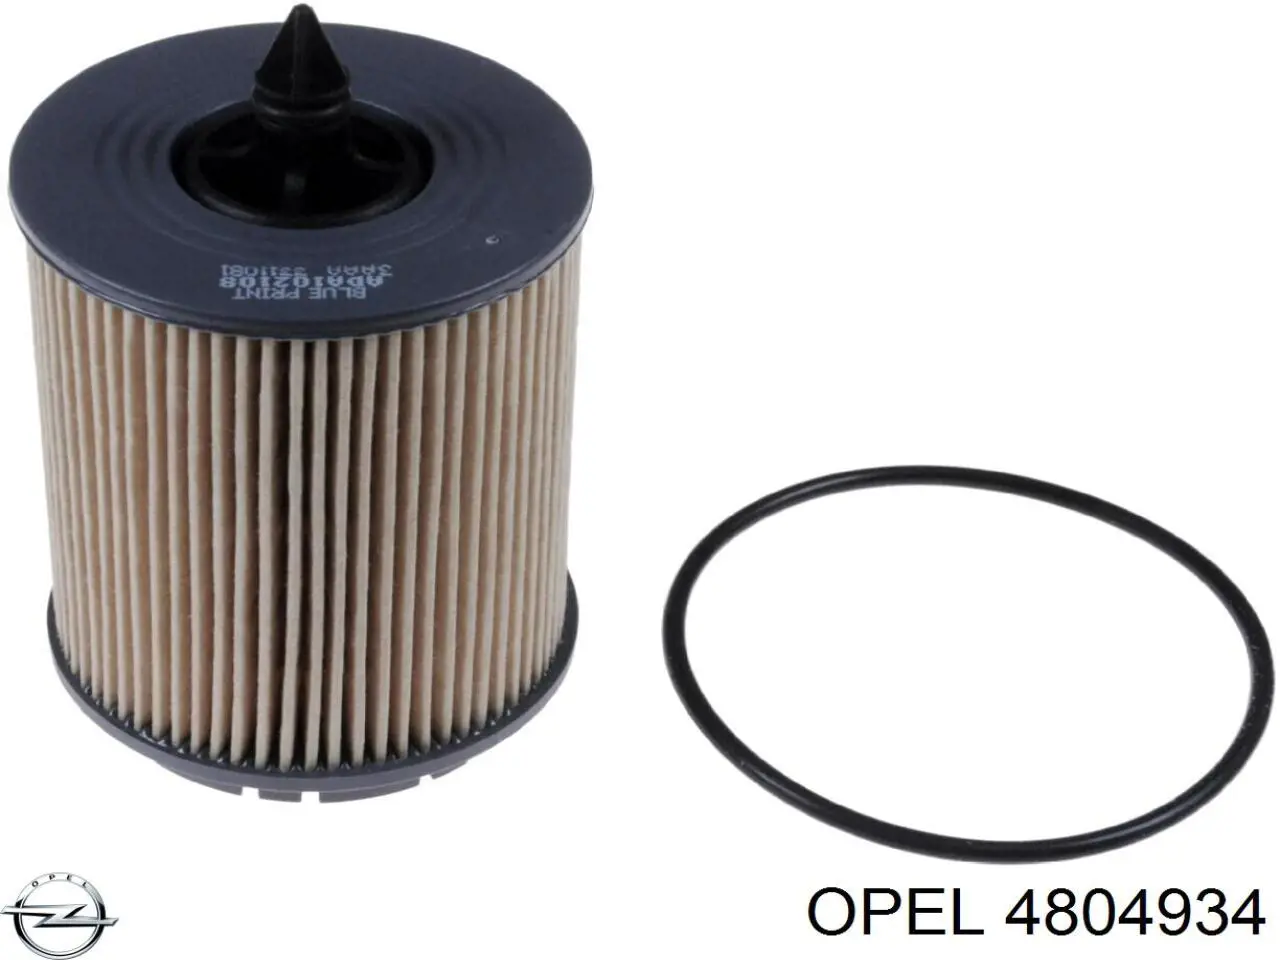 4804934 Opel filtro de aceite